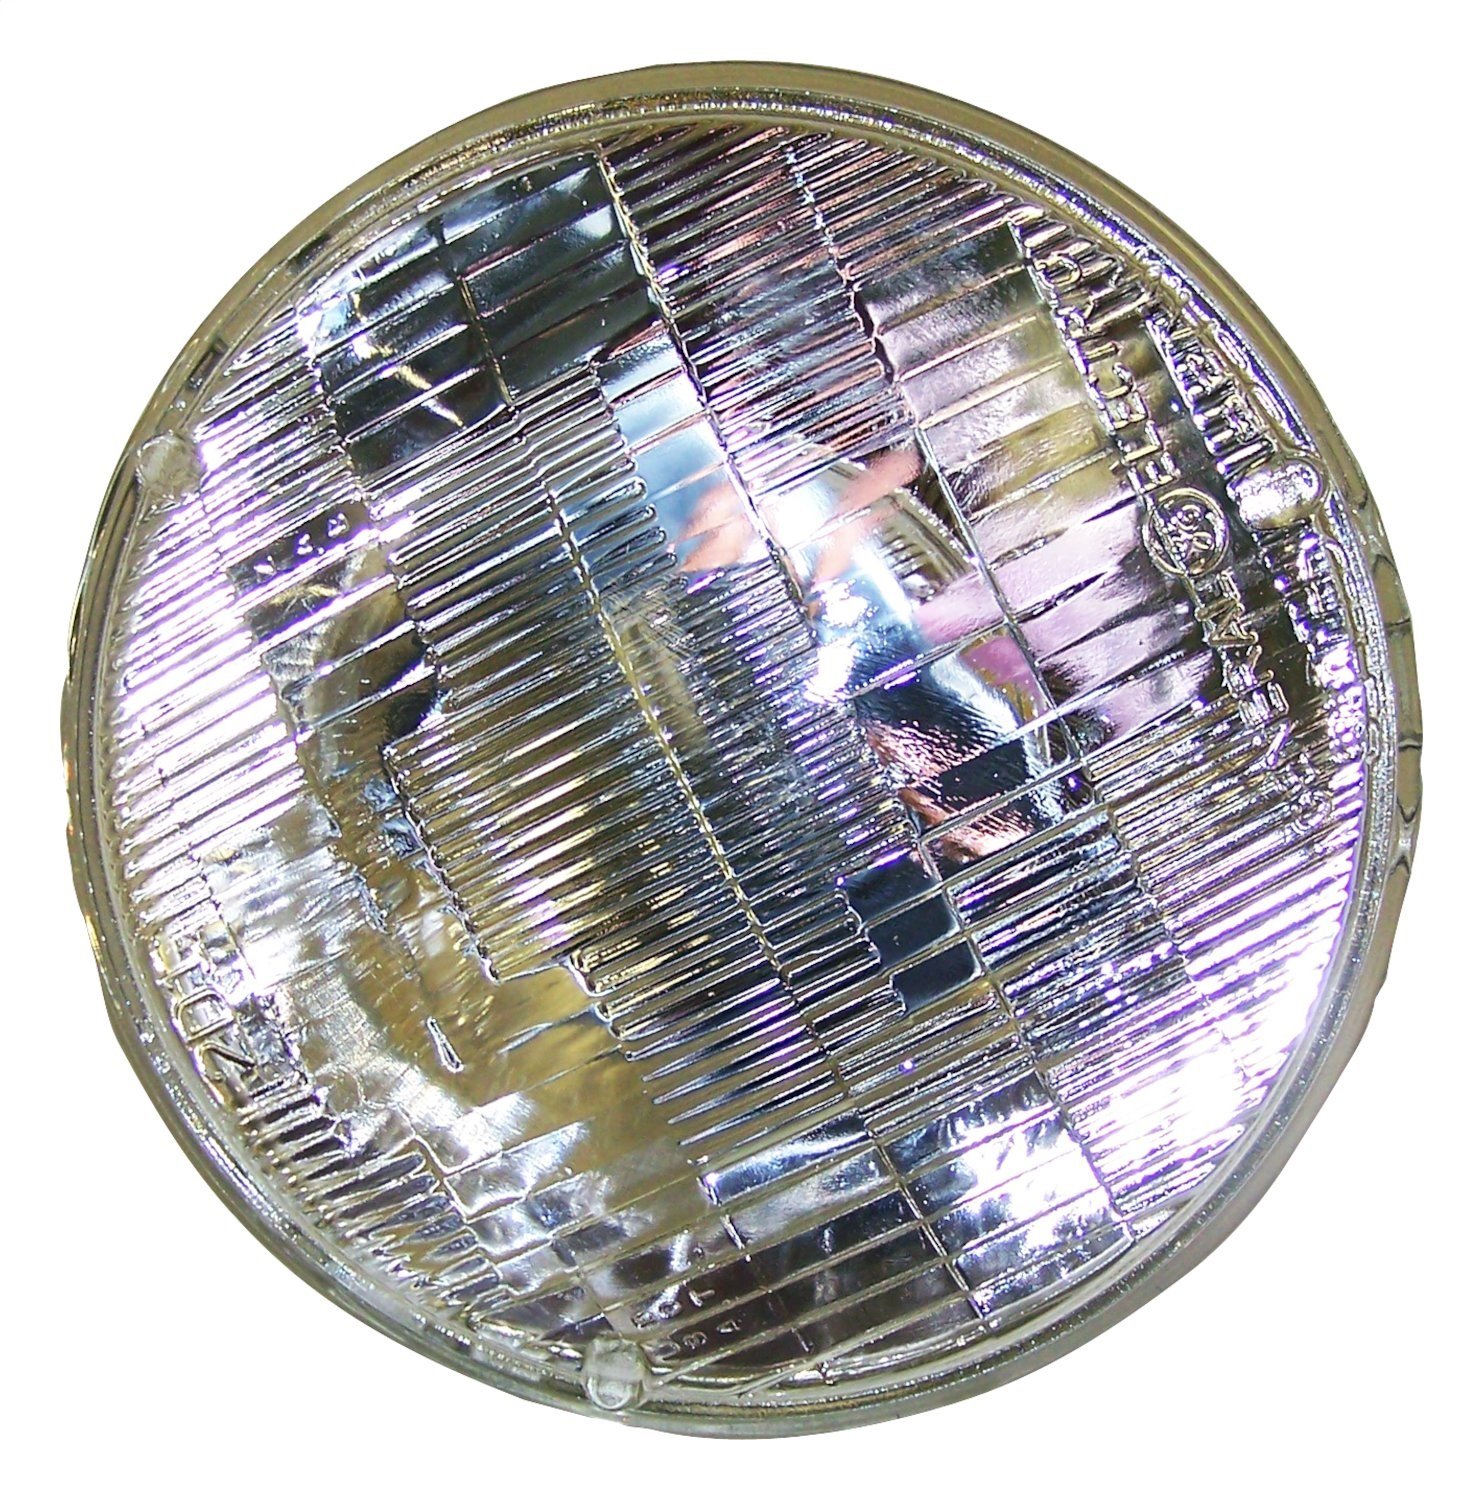 Headlamp Bulb